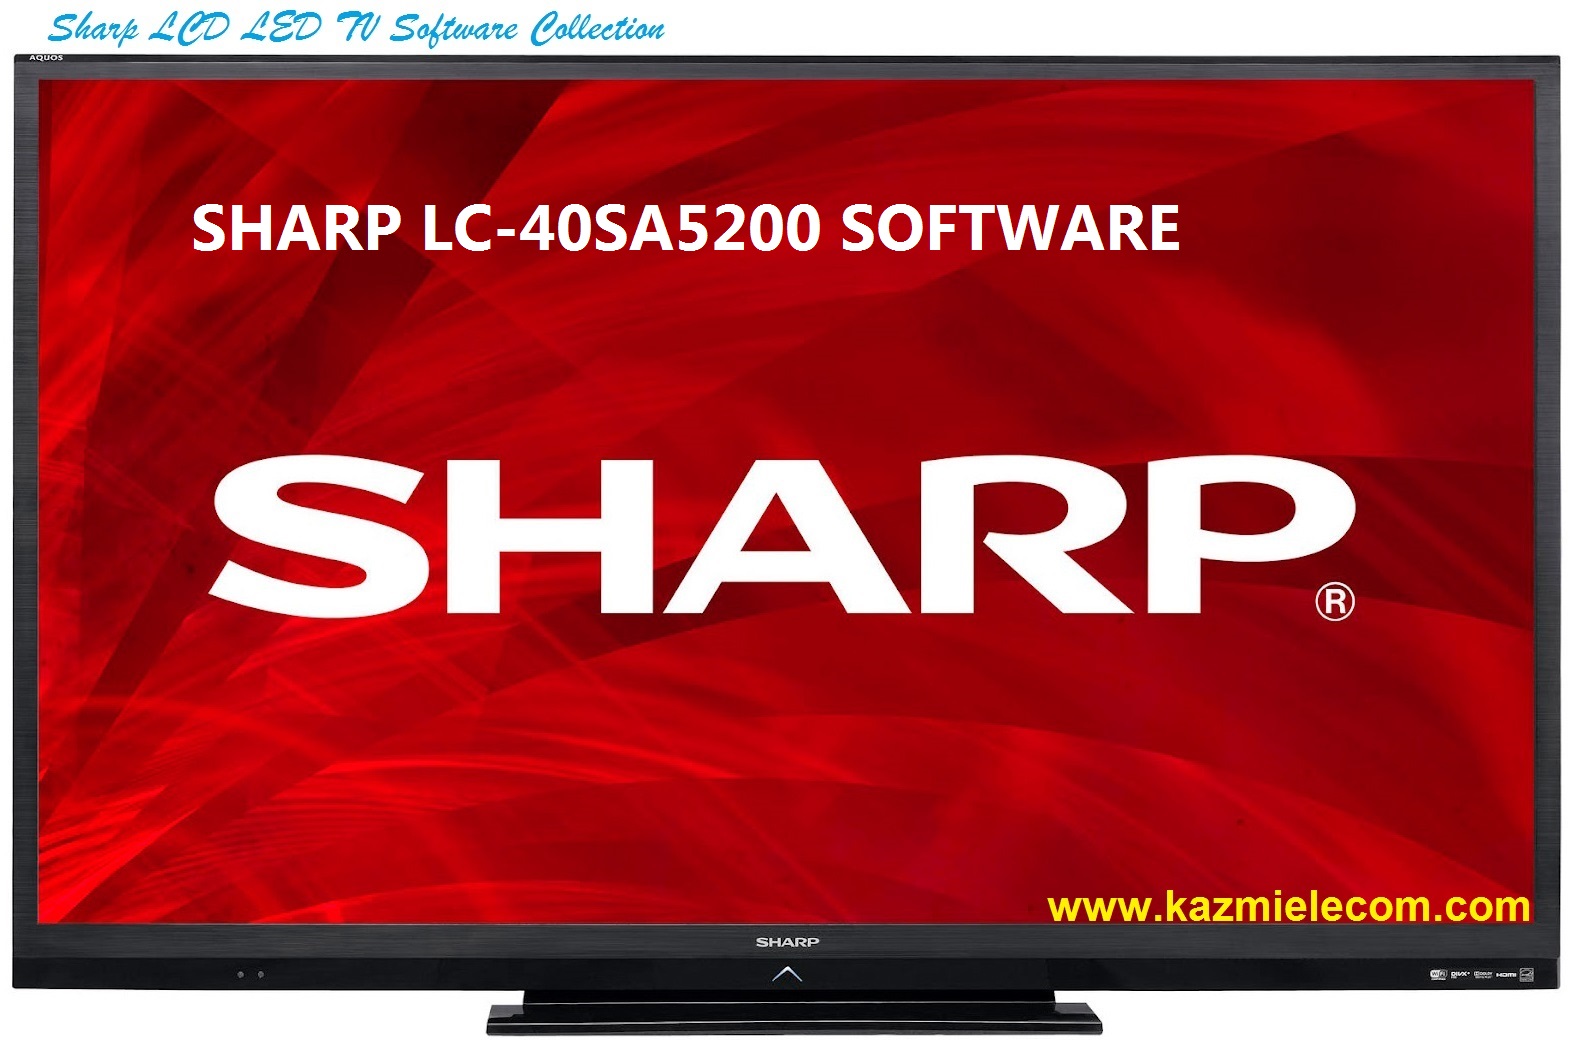 Sharp Lc-40Sa5200